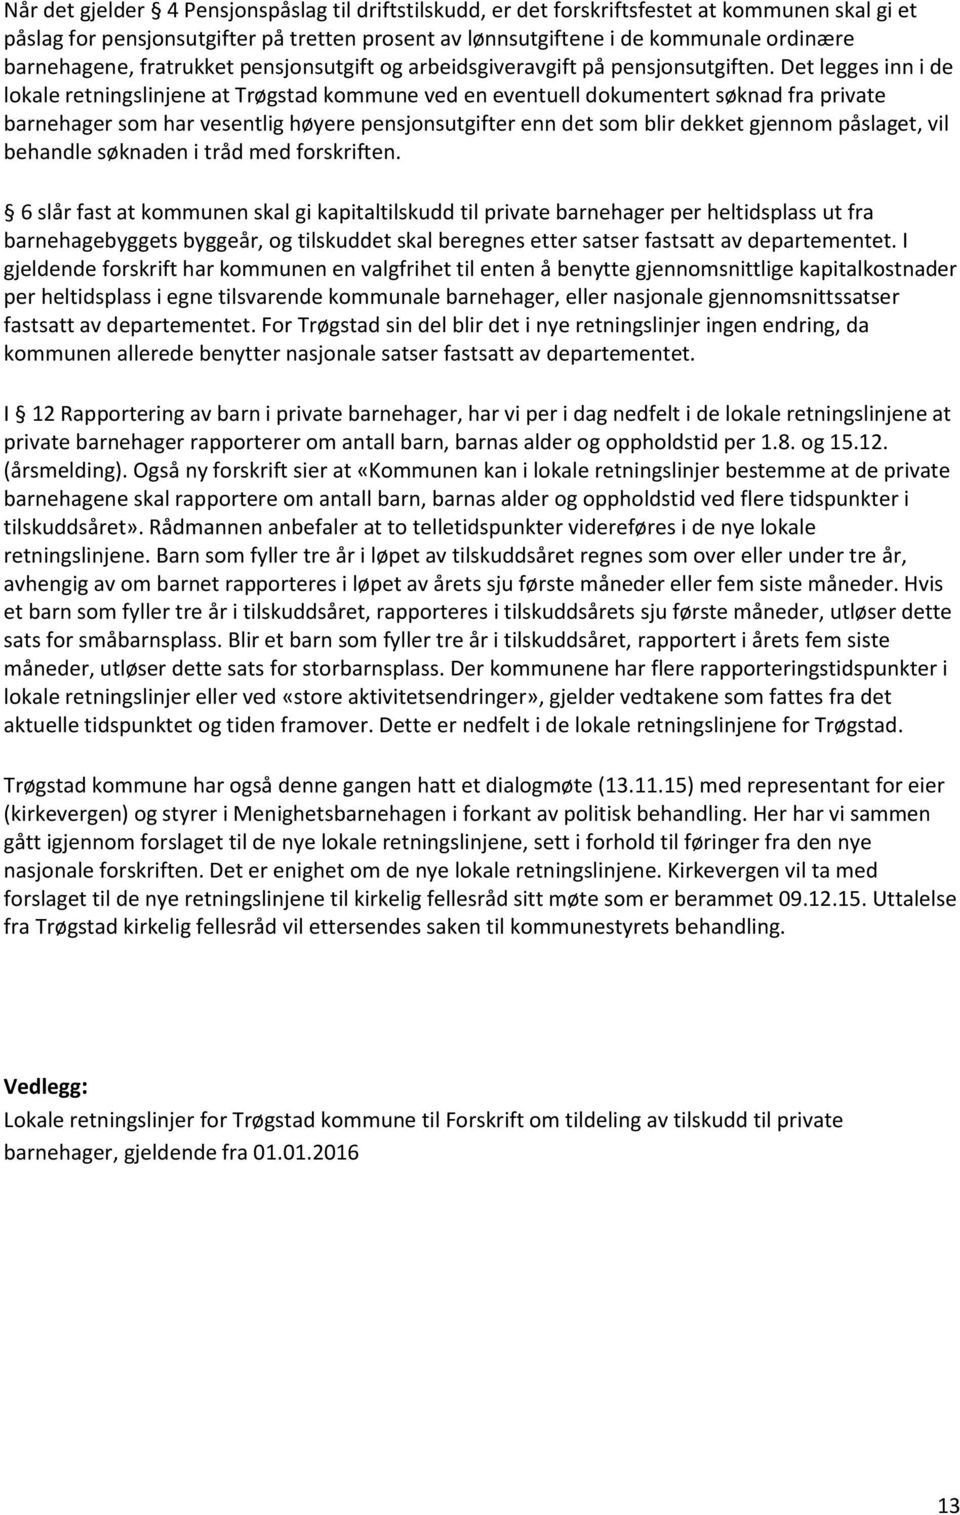 Det legges inn i de lokale retningslinjene at Trøgstad kommune ved en eventuell dokumentert søknad fra private barnehager som har vesentlig høyere pensjonsutgifter enn det som blir dekket gjennom